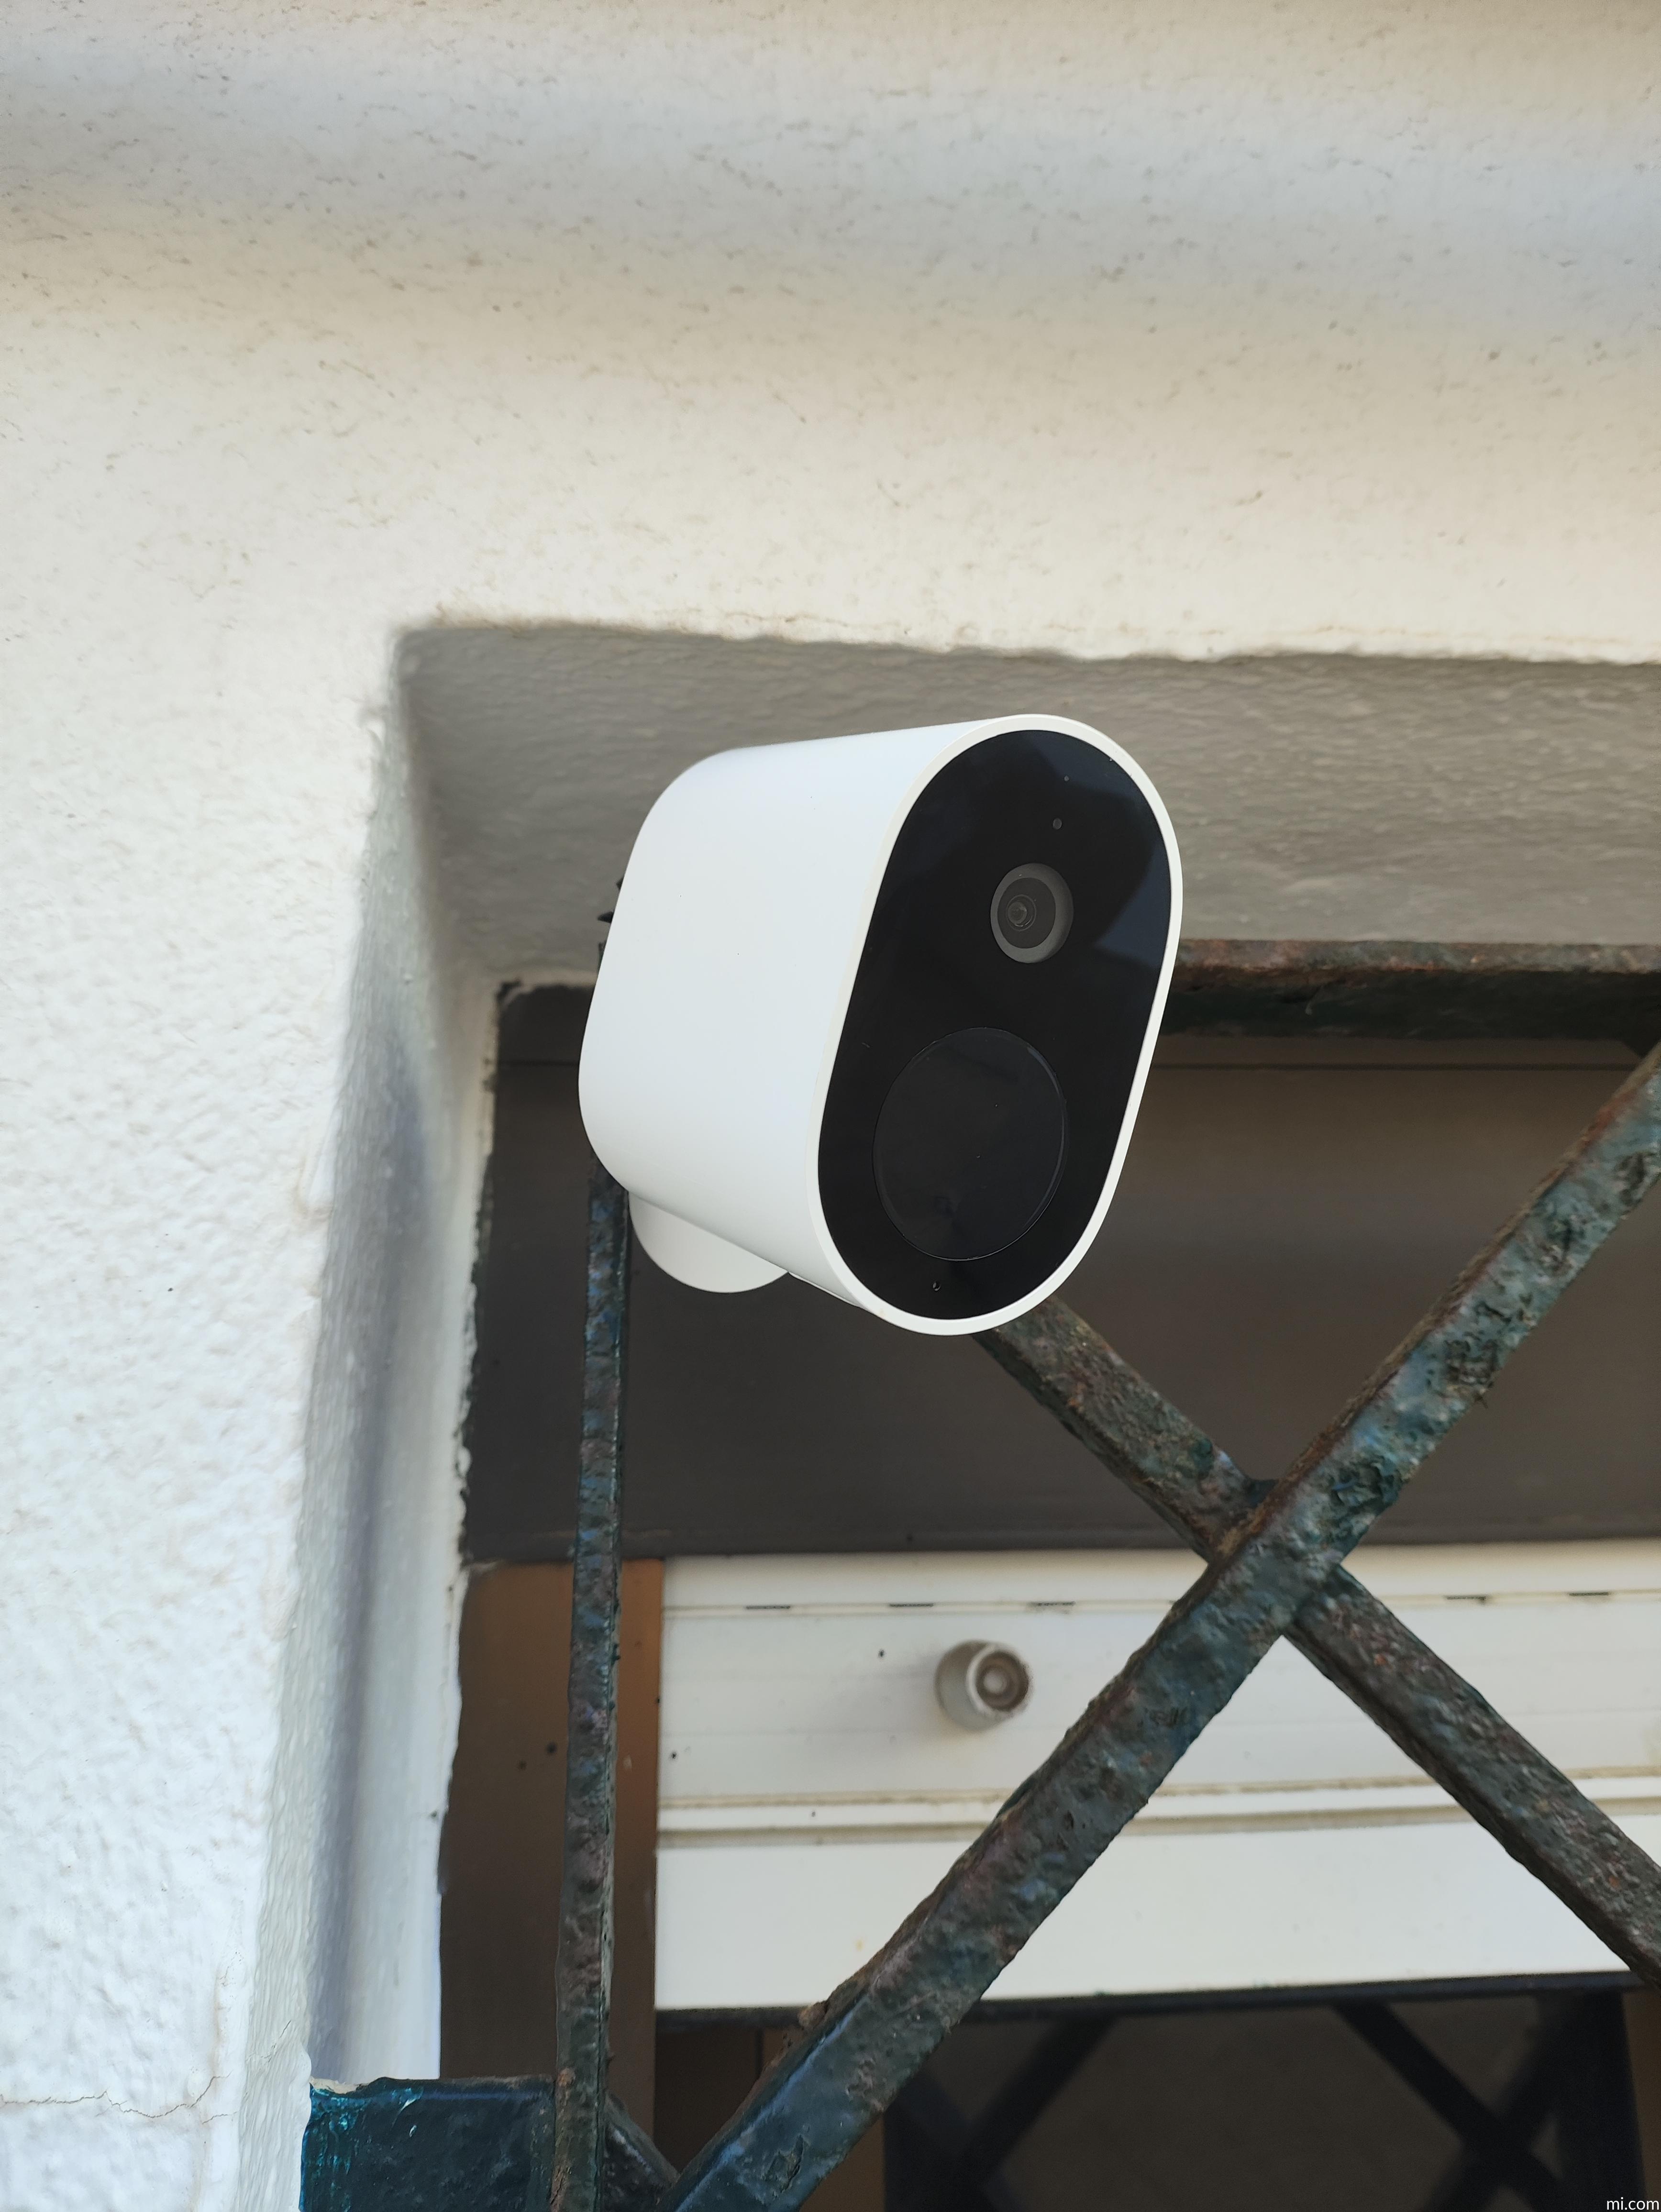 Xiaomi Mi Wireless Outdoor Security Camera 1080p protege tu hogar